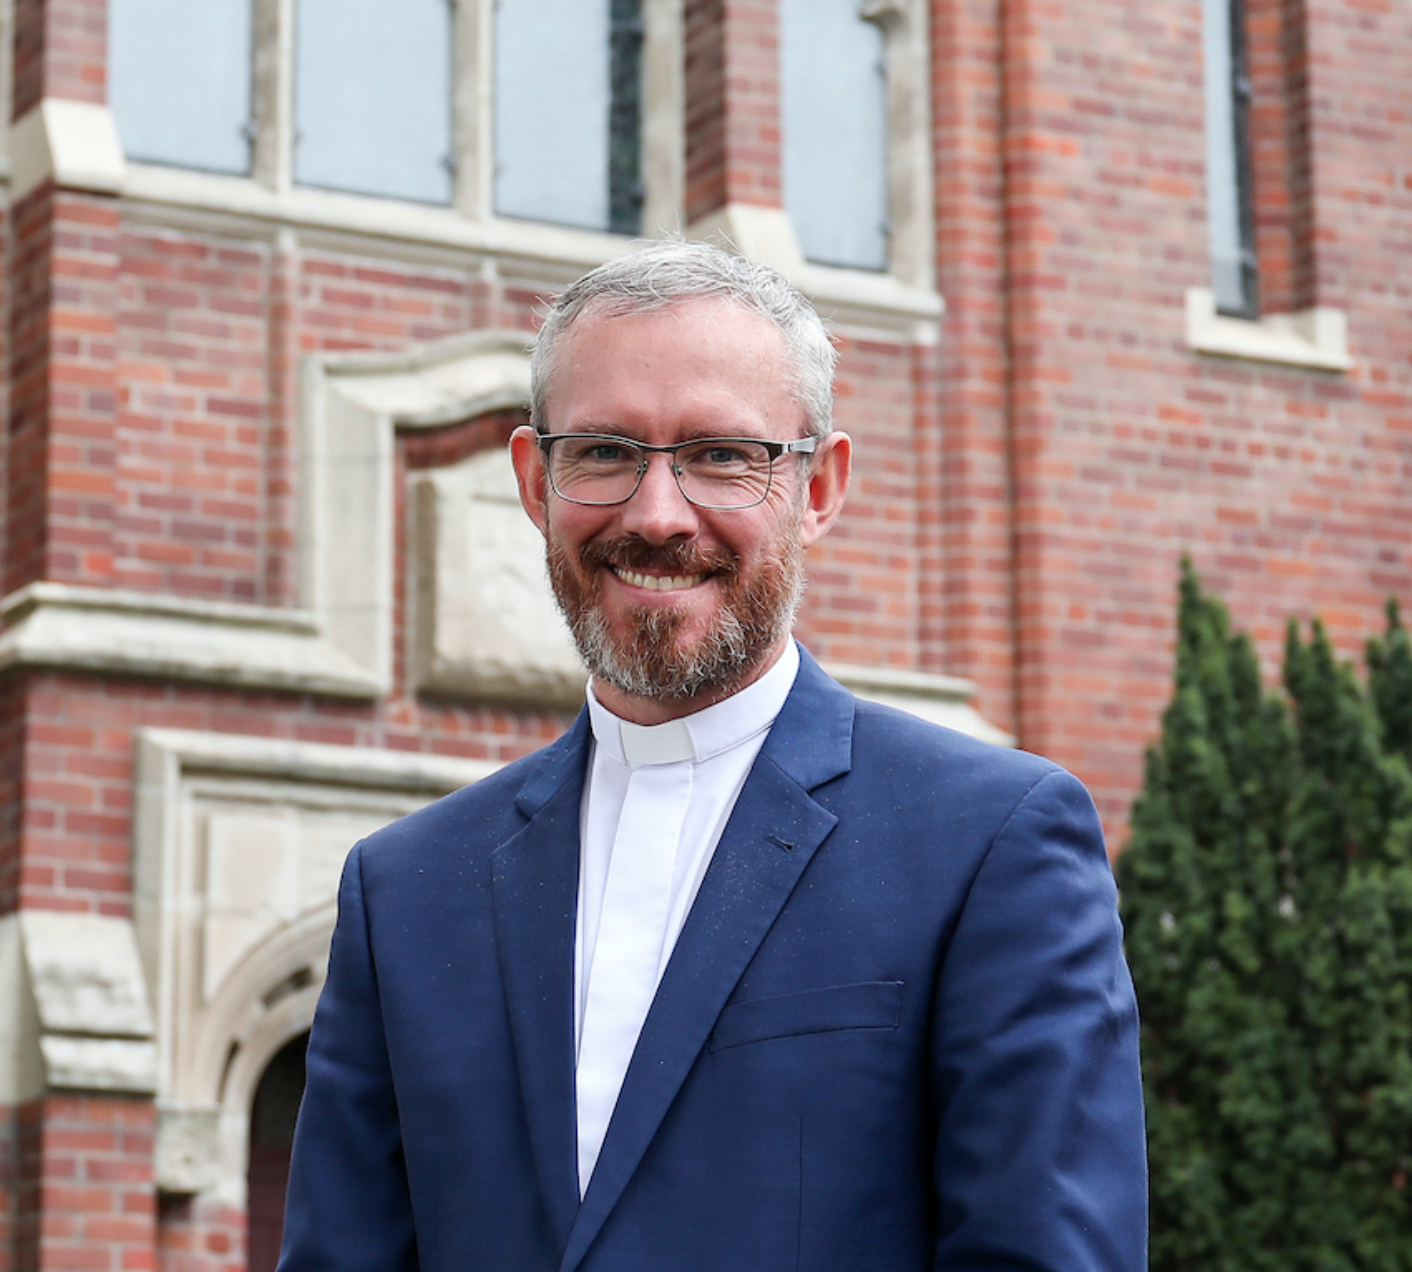 Rev. Gareth Walters